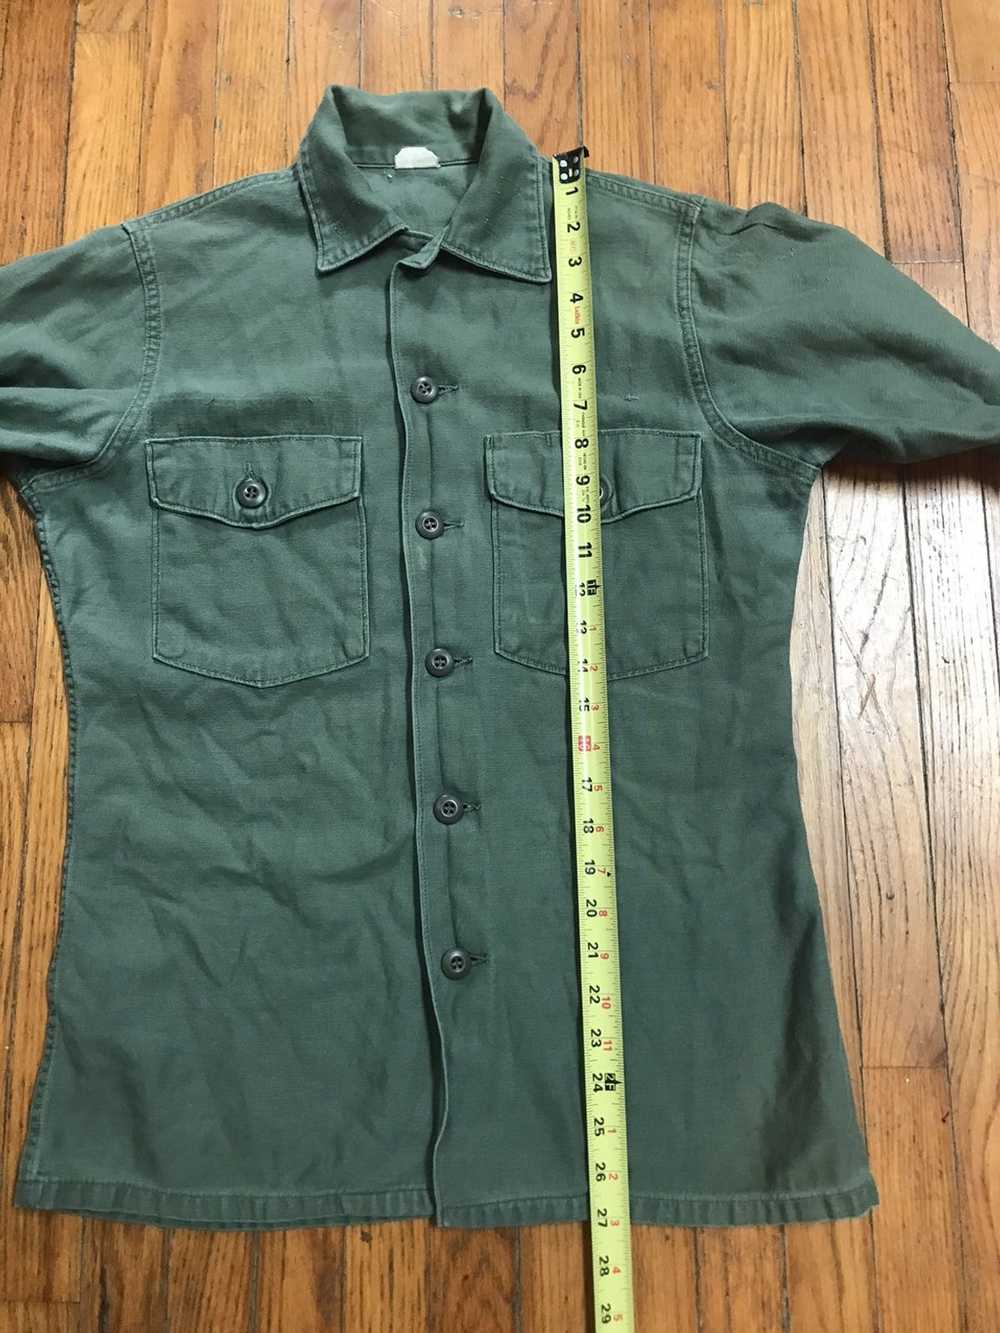 Military × Vintage Vintage og107 shirt with graph… - image 9